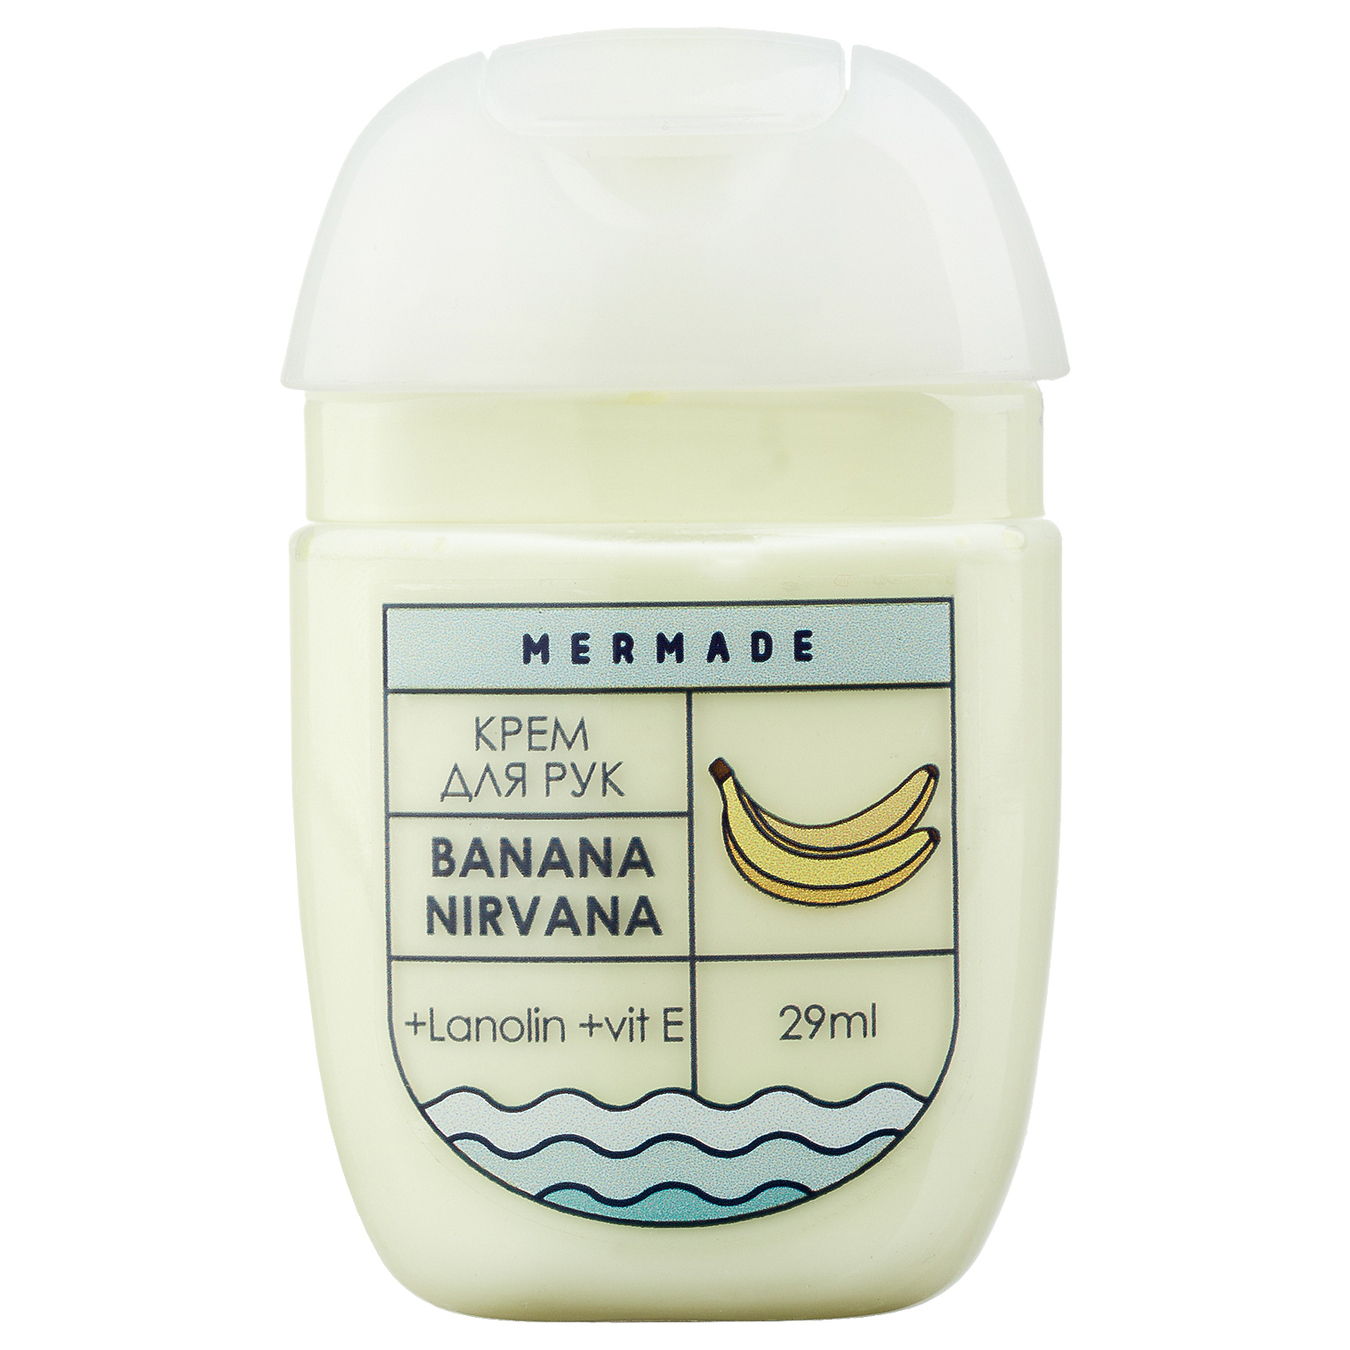 Mermade Banana Nirvana hand cream with lanolin 29ml